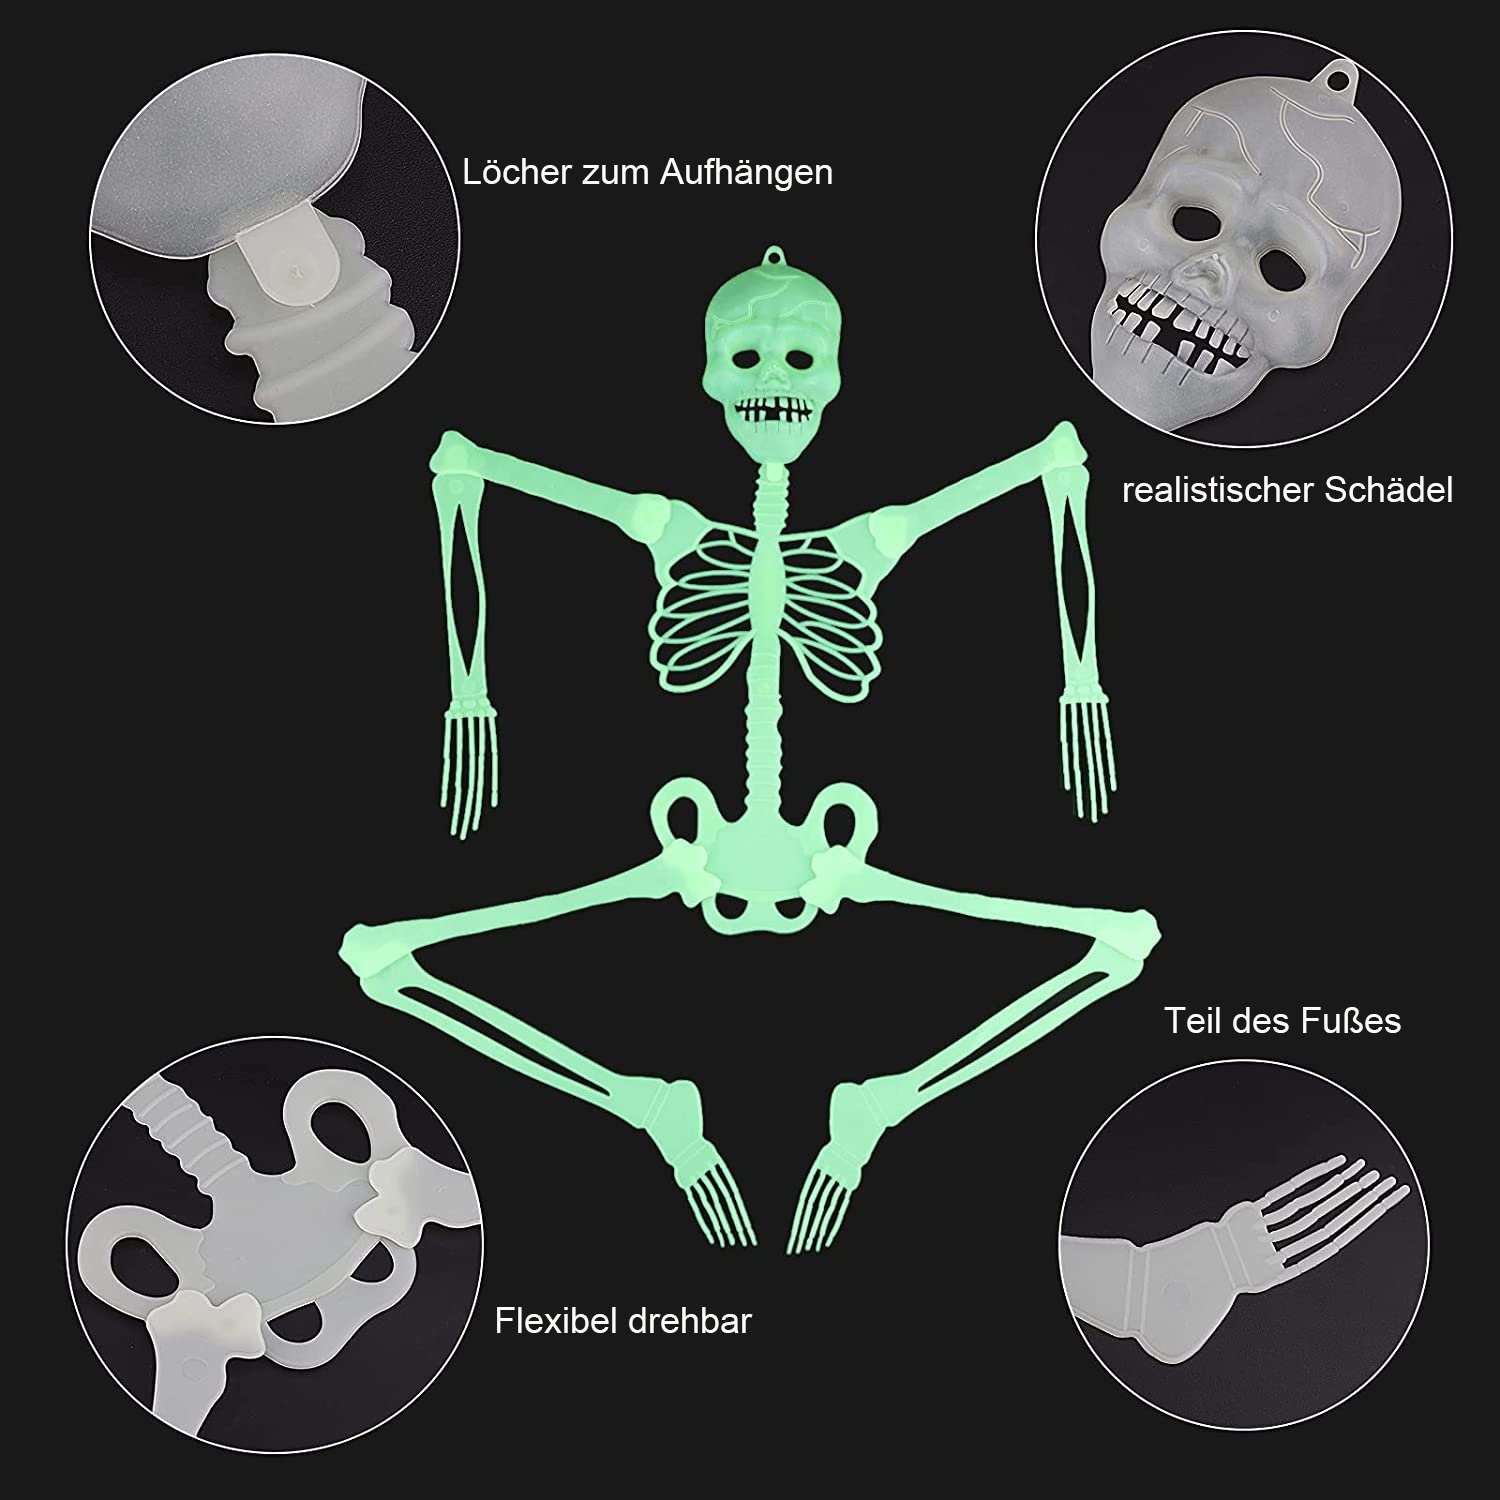 GelldG Dekoobjekt Halloween Leuchtendes Schädel-Skelett, Leuchtendes 2 Skelett Stück